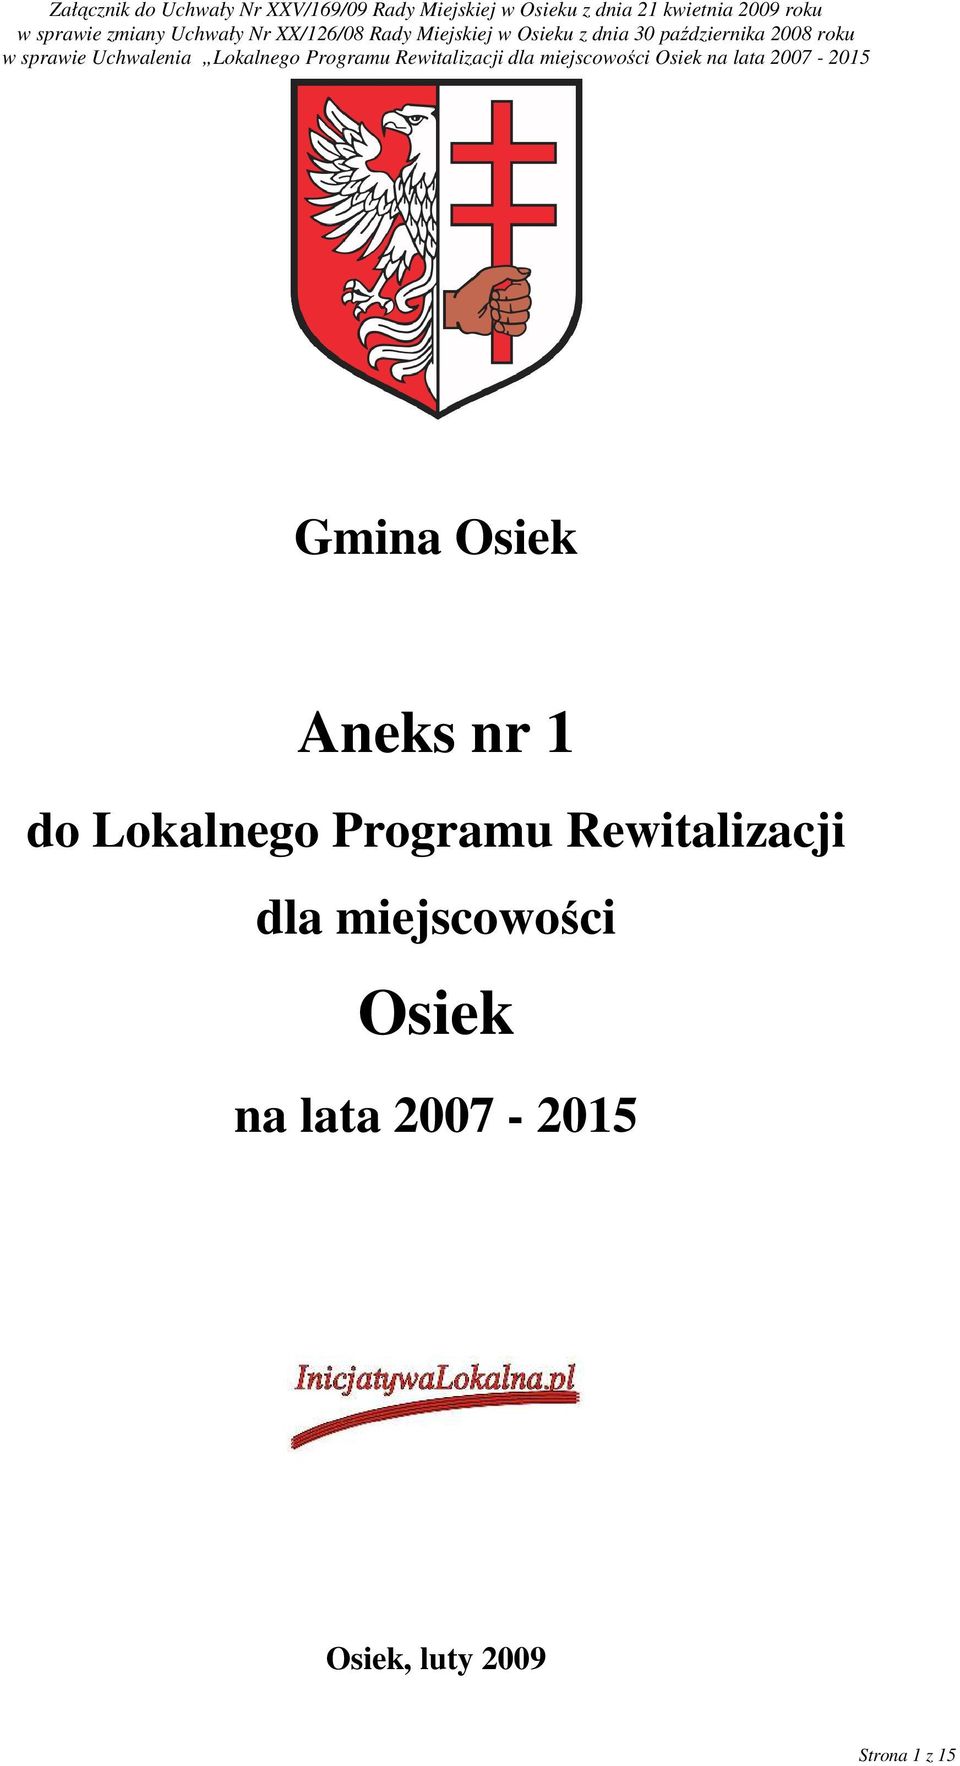 Uchwalenia Lokalnego Programu Rewitalizacji dla miejscowości Osiek na lata 2007-2015 Gmina Osiek